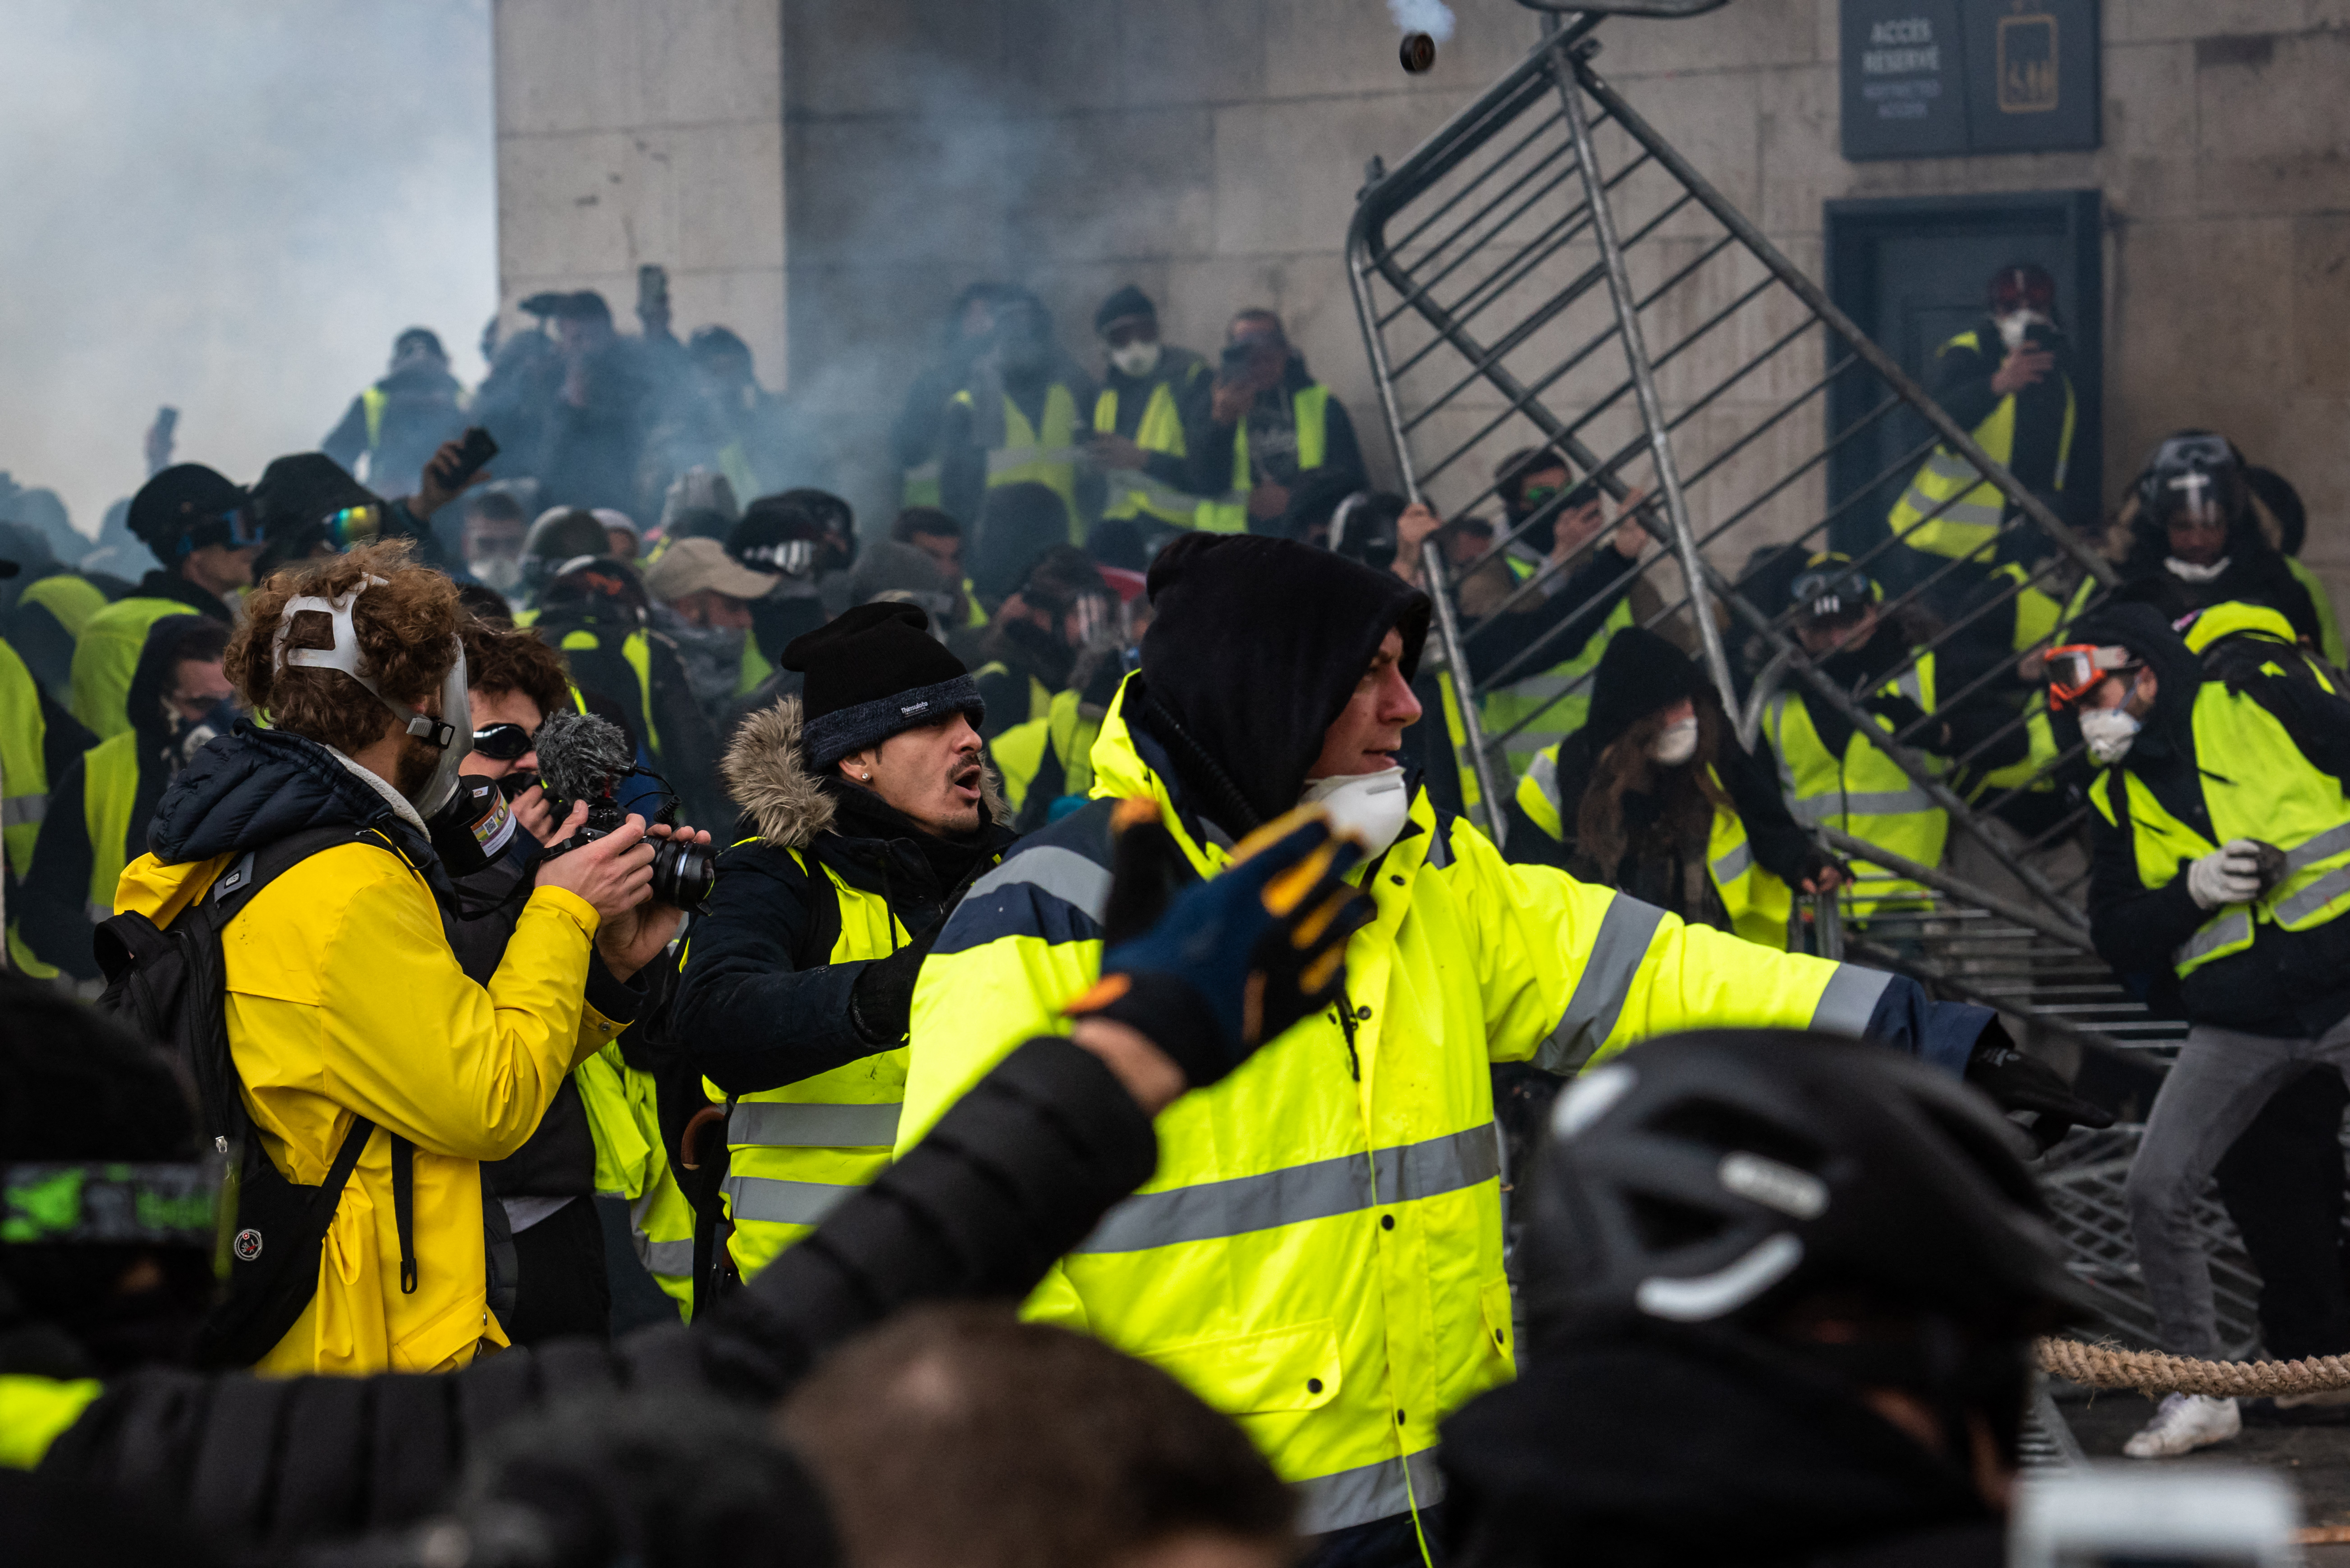 Francja: "Żółte kamizelki" i policja szykują się na zamieszki - Wiadomości